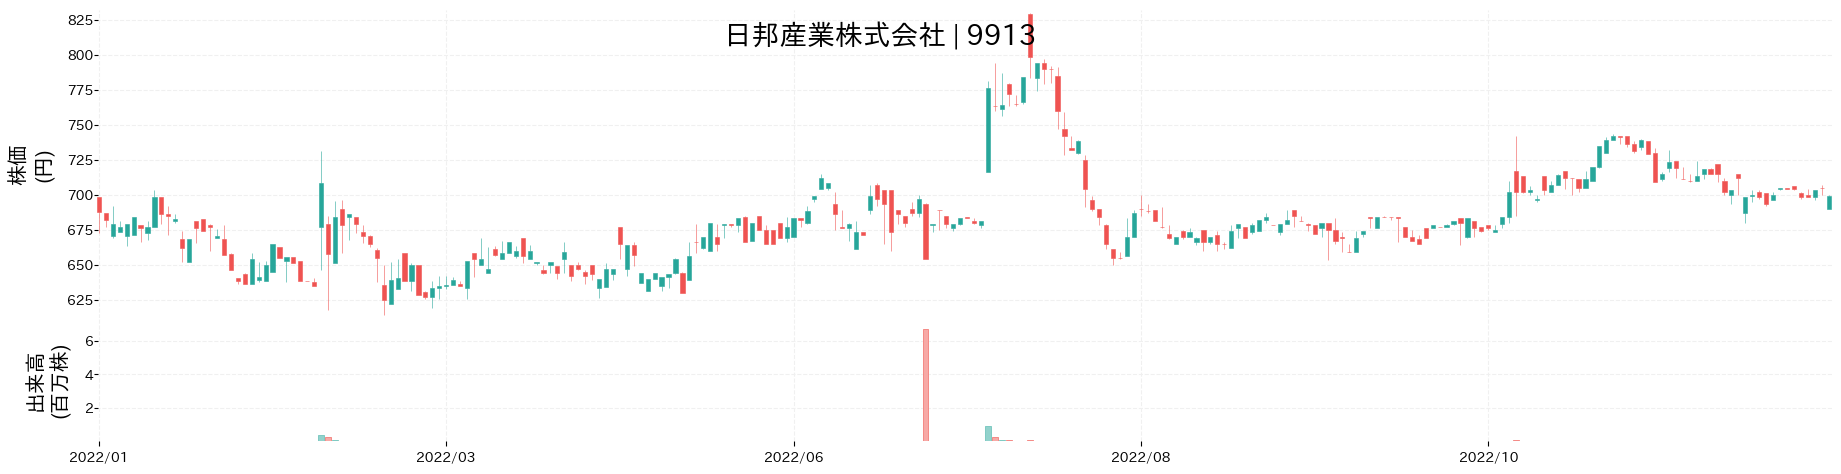 日邦産業の株価推移(2022)